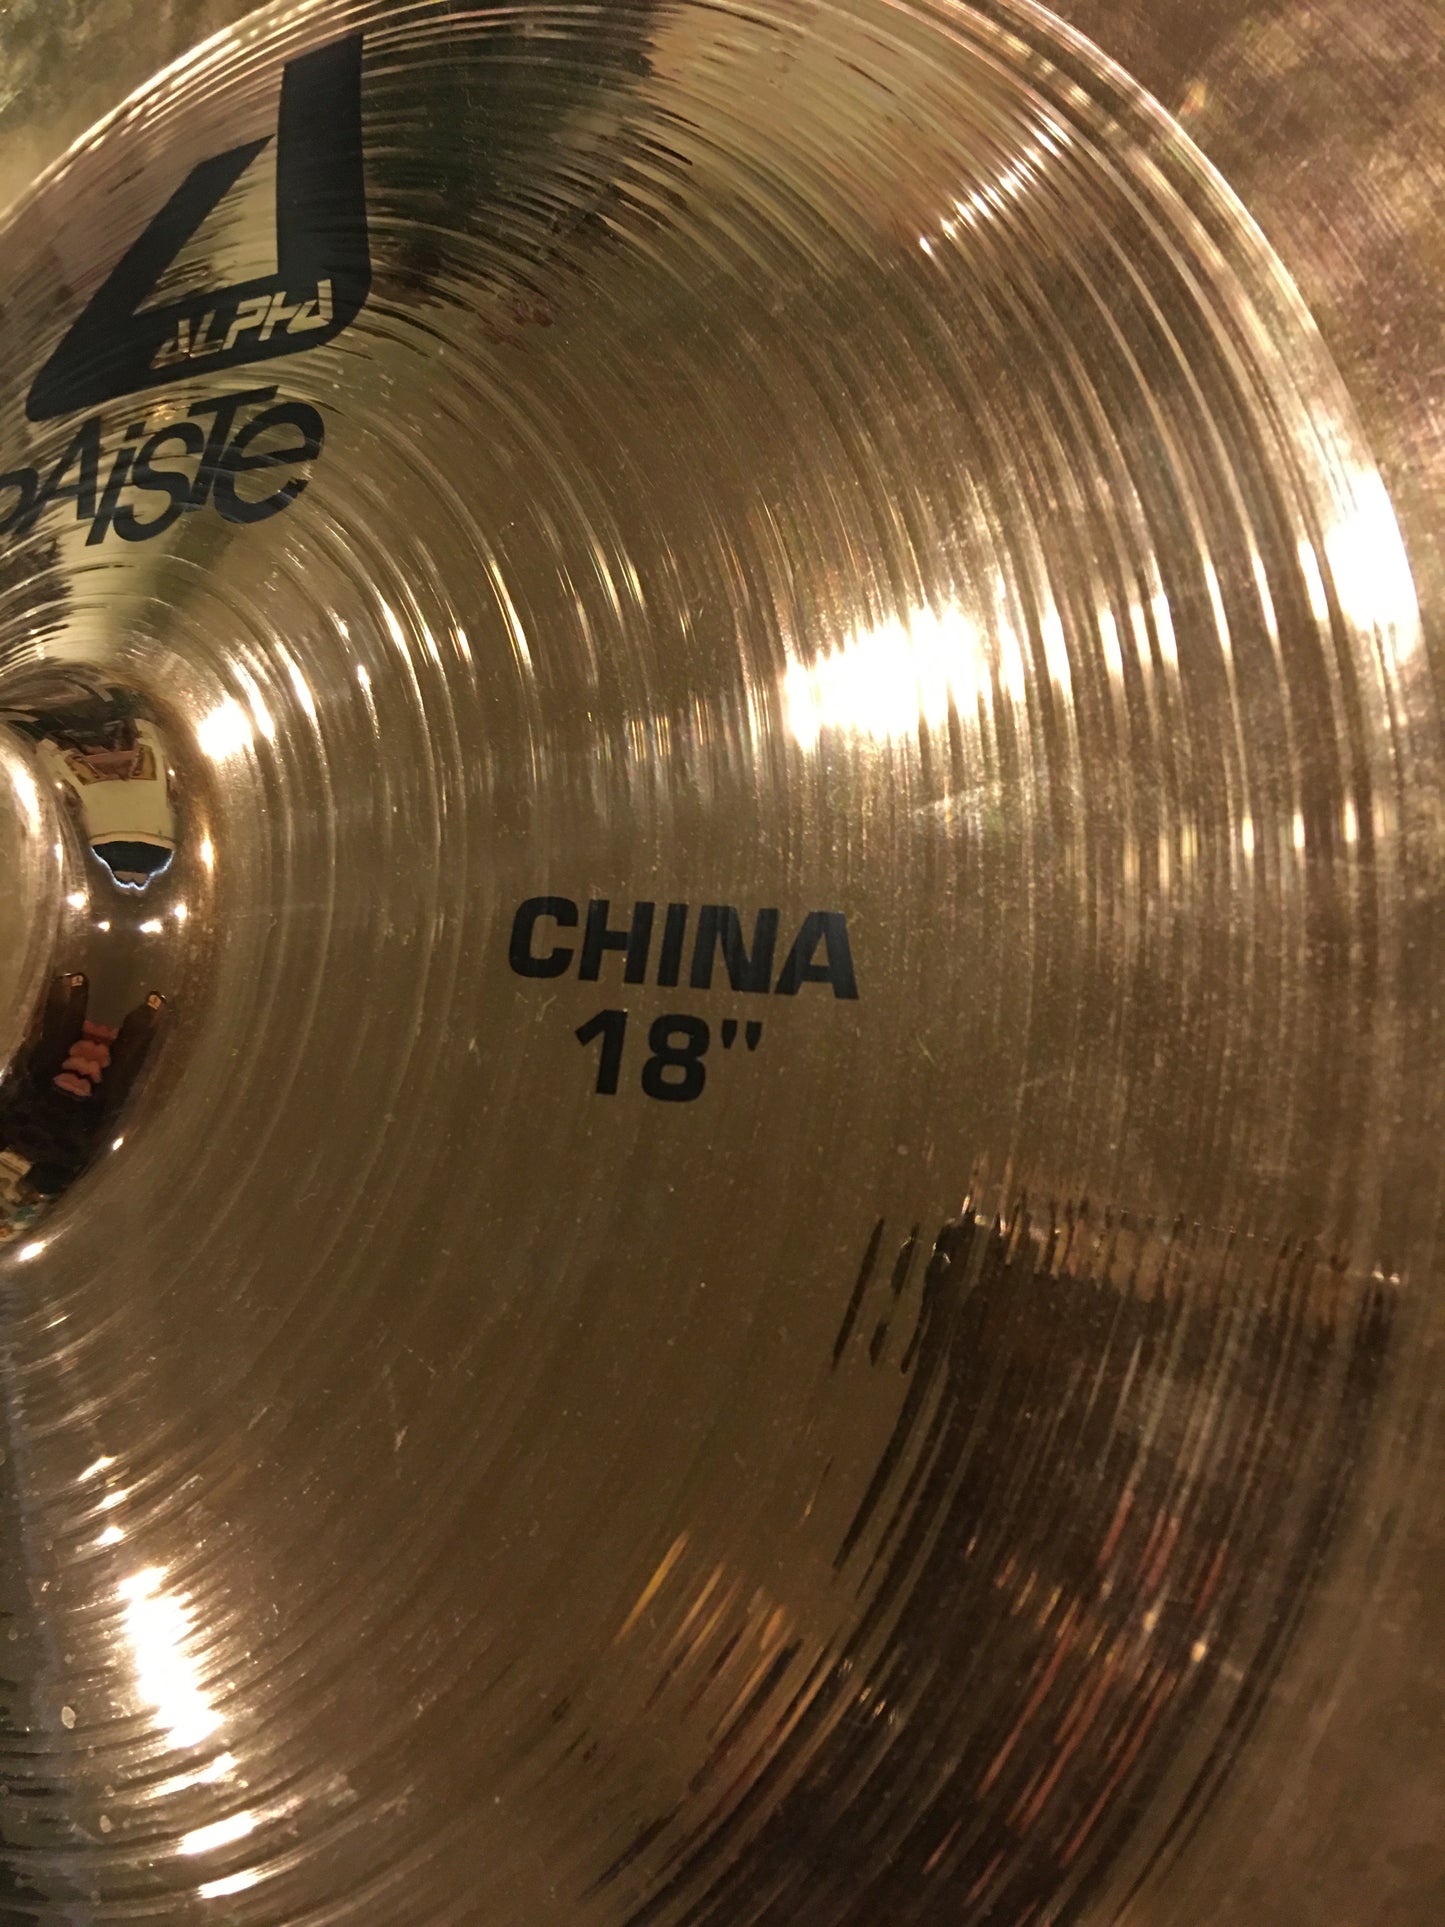 18" Paiste Alpha China Cymbal